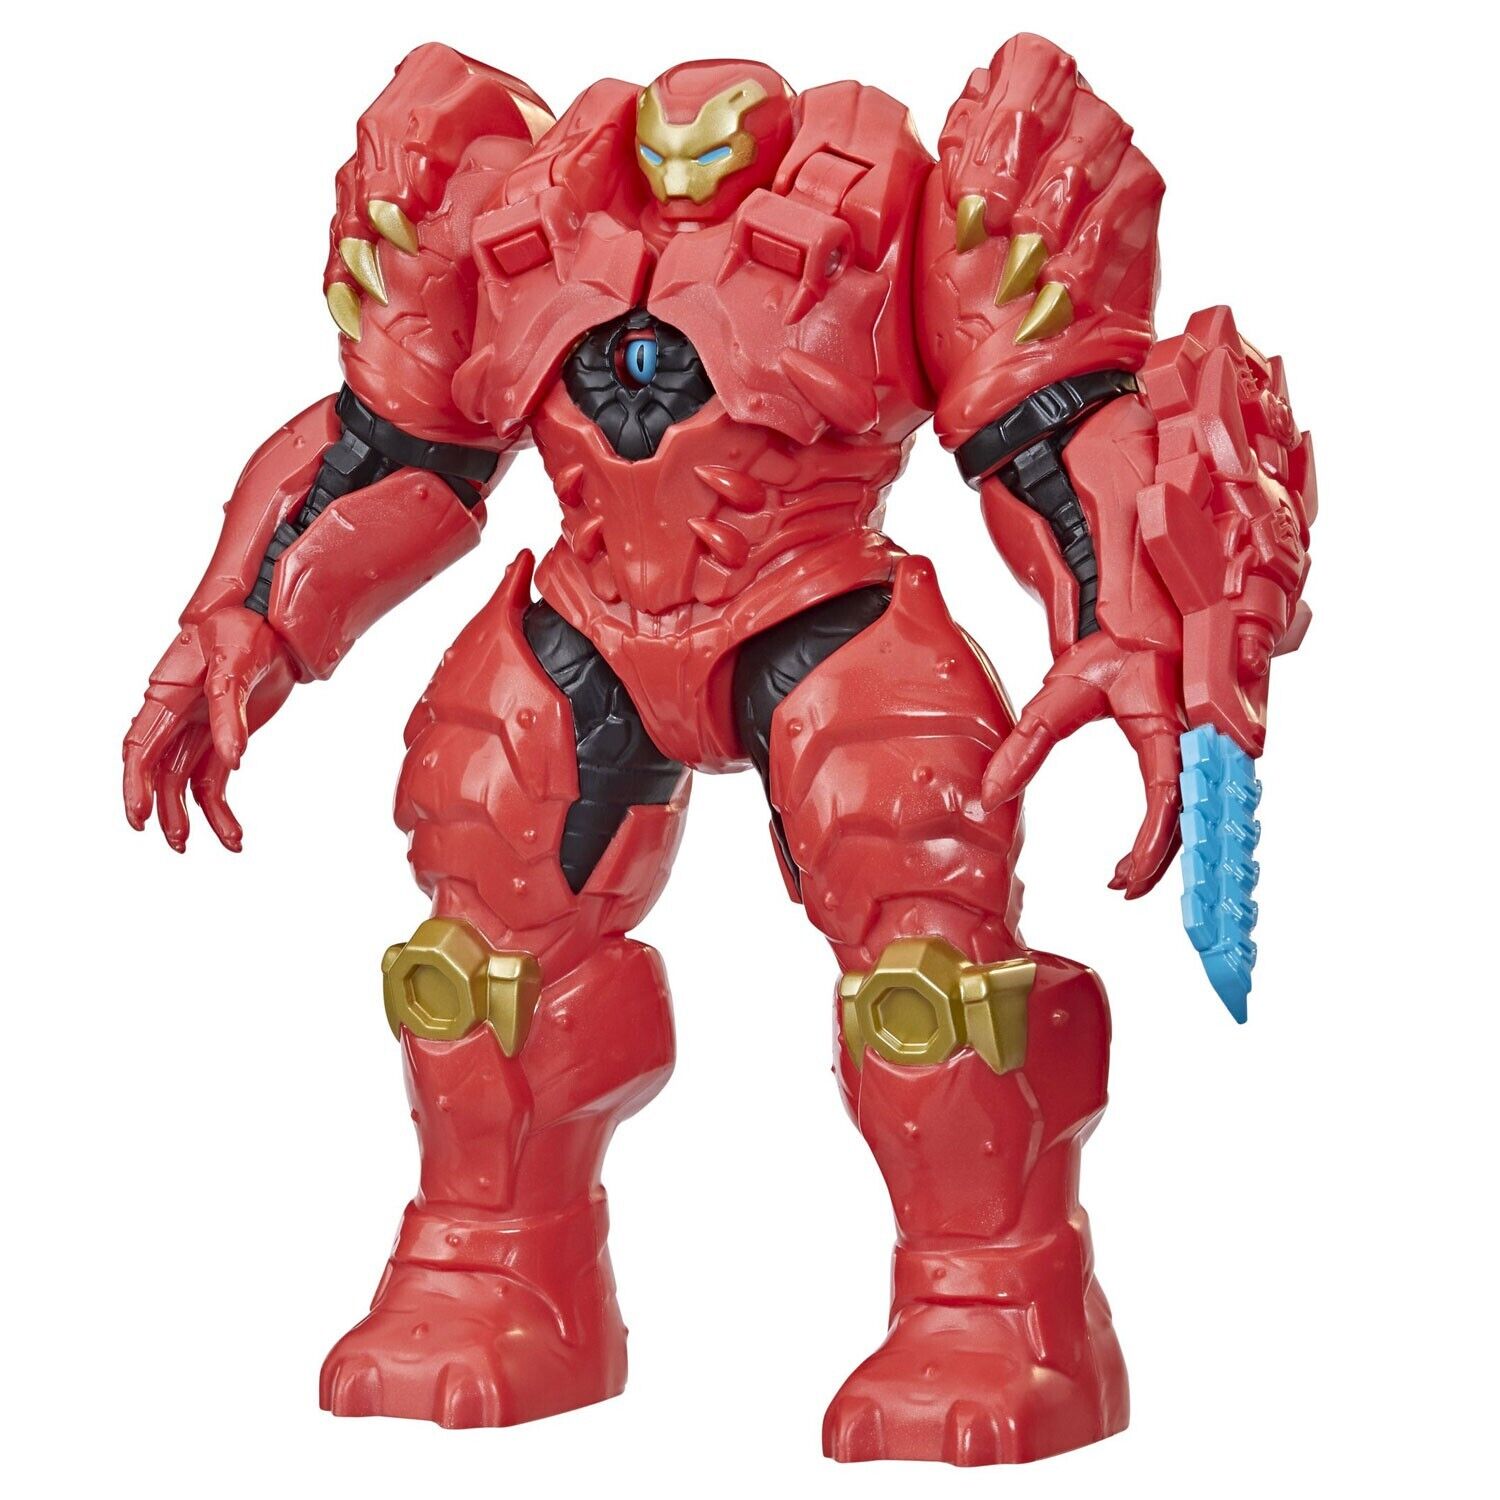 Marvel Avengers Mech Strike Hunter Suit Iron Man Figure - New in Box